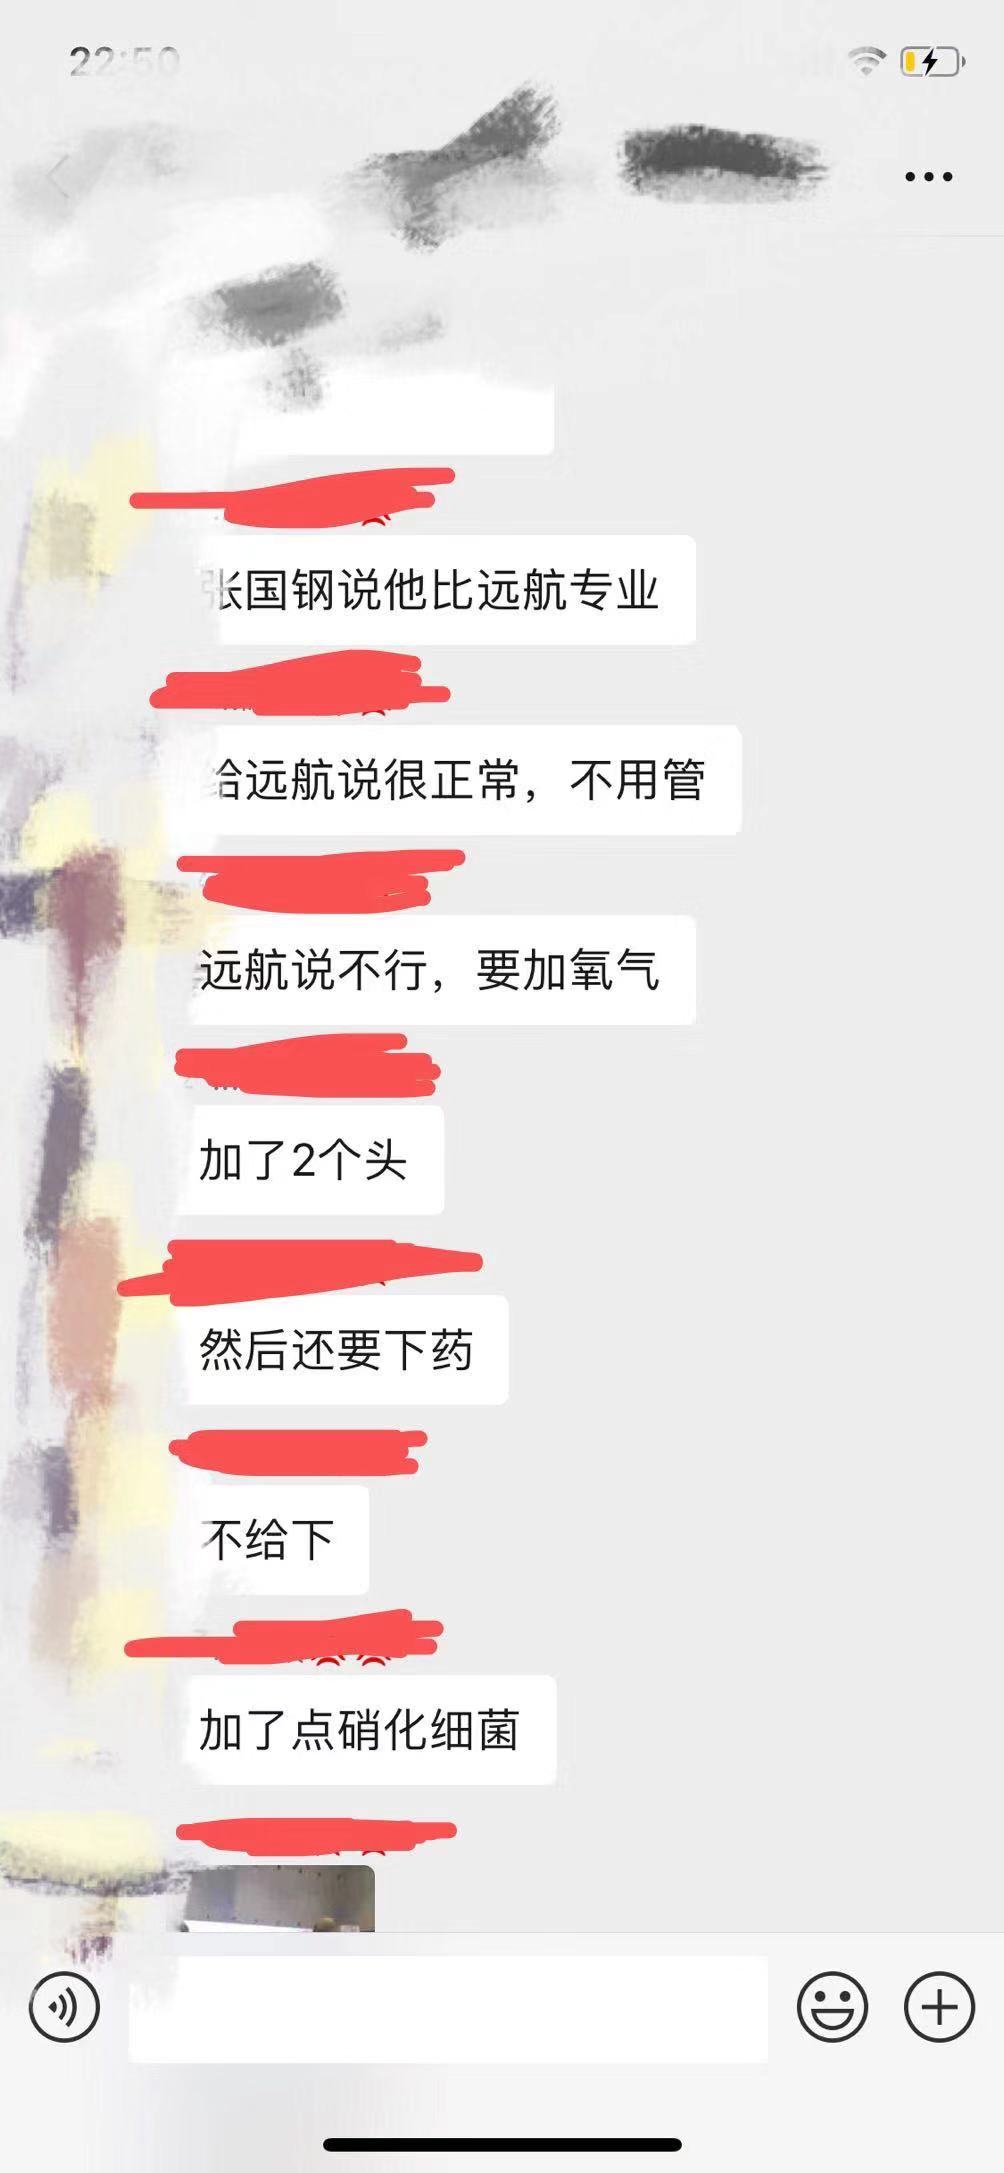 2019长城杯投诉张国刚